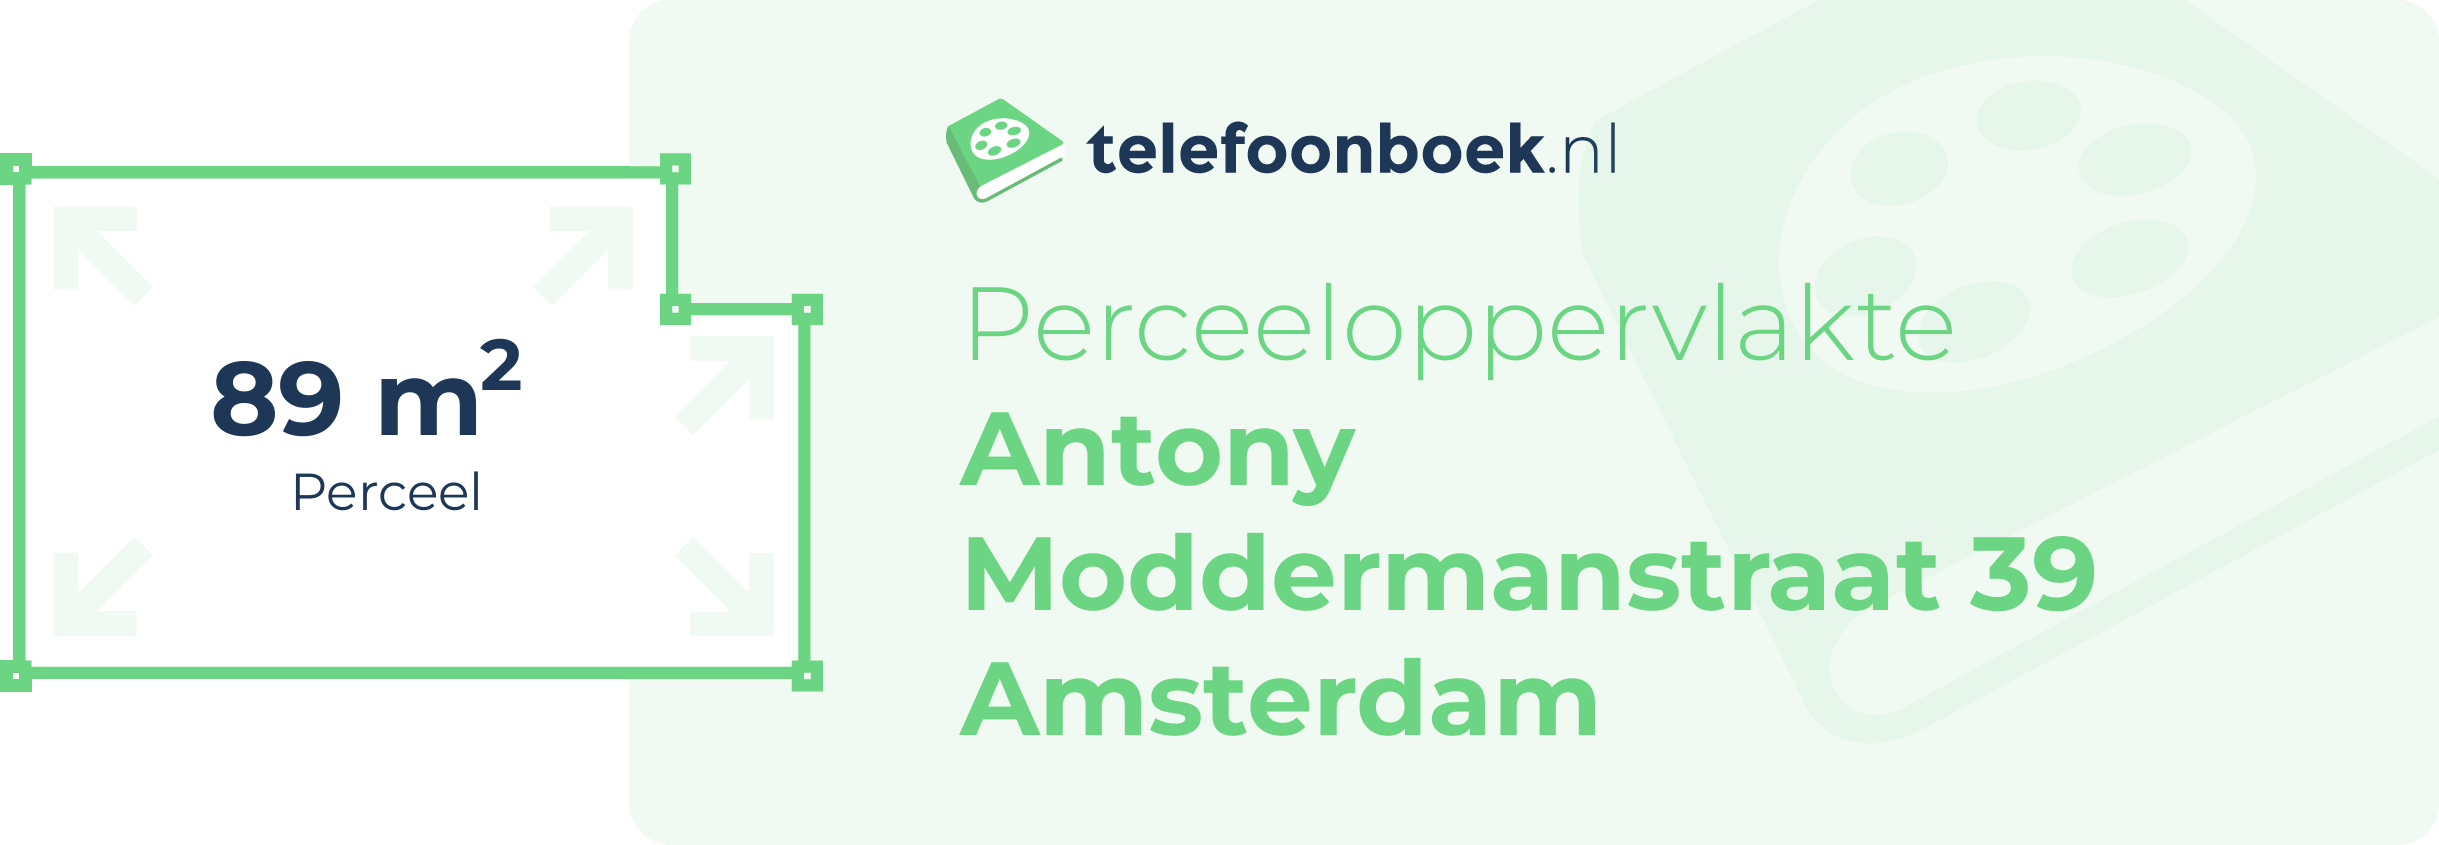 Perceeloppervlakte Antony Moddermanstraat 39 Amsterdam